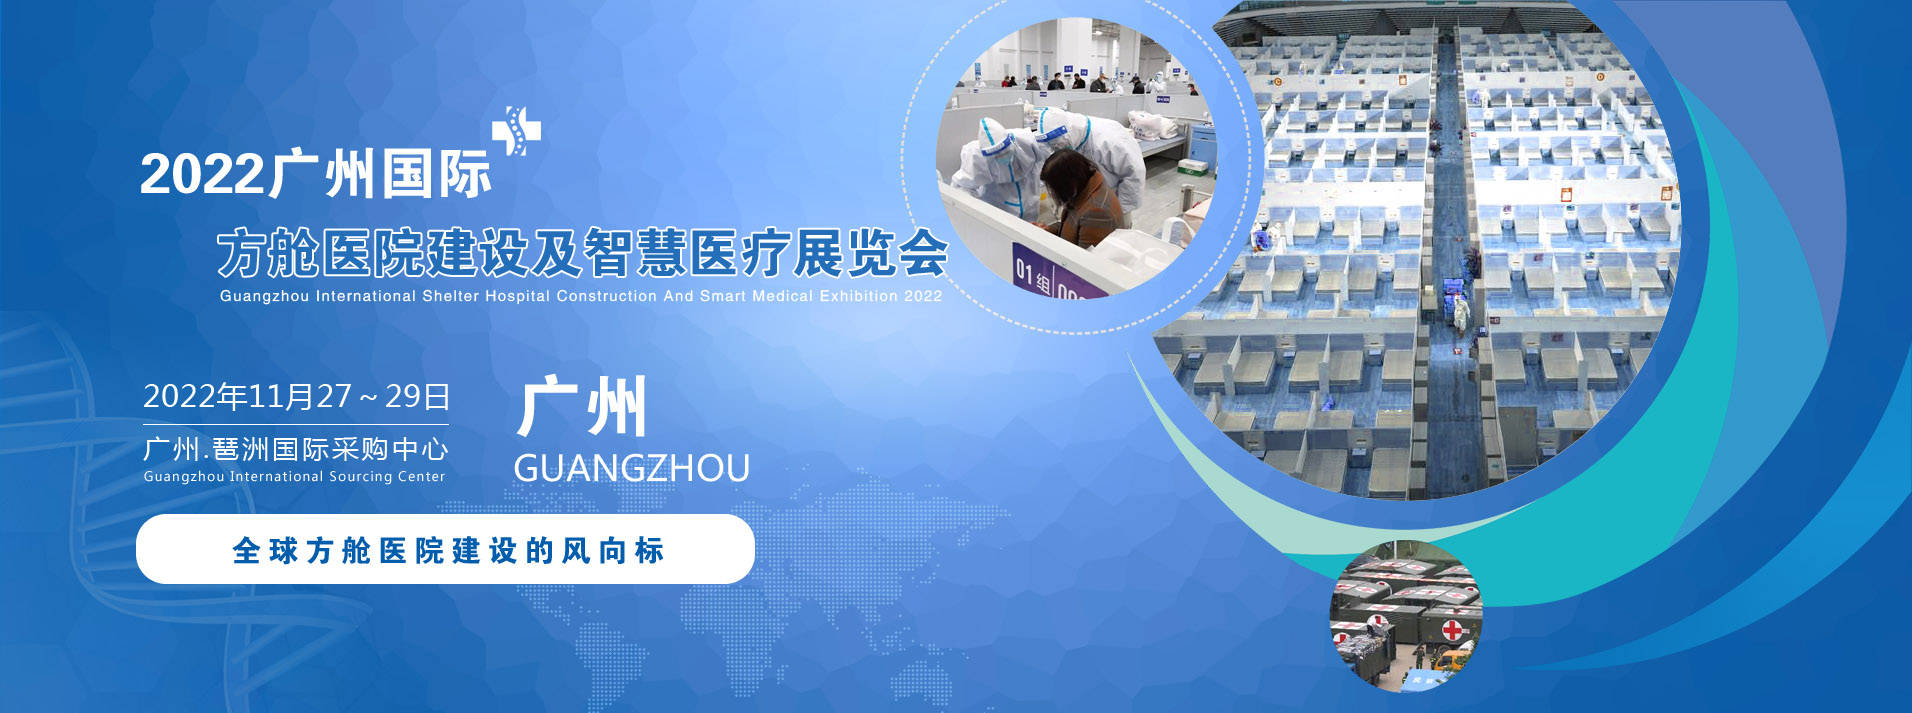 广州展会搭建商推荐2022广州国际方舱医院建设及智慧医疗设计展览会